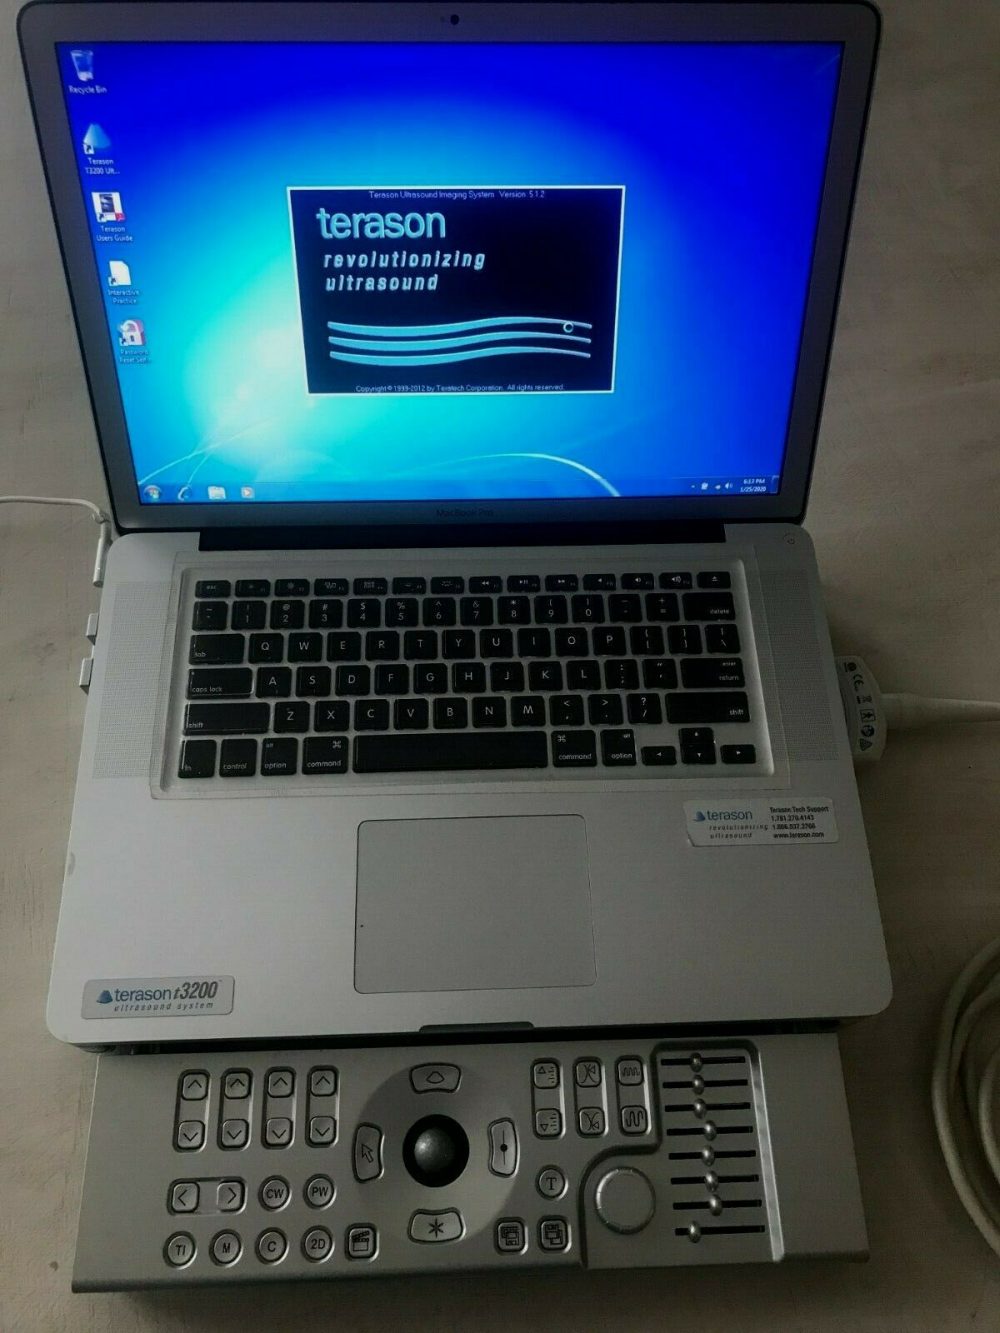 Terason t3200 Ultrasound System